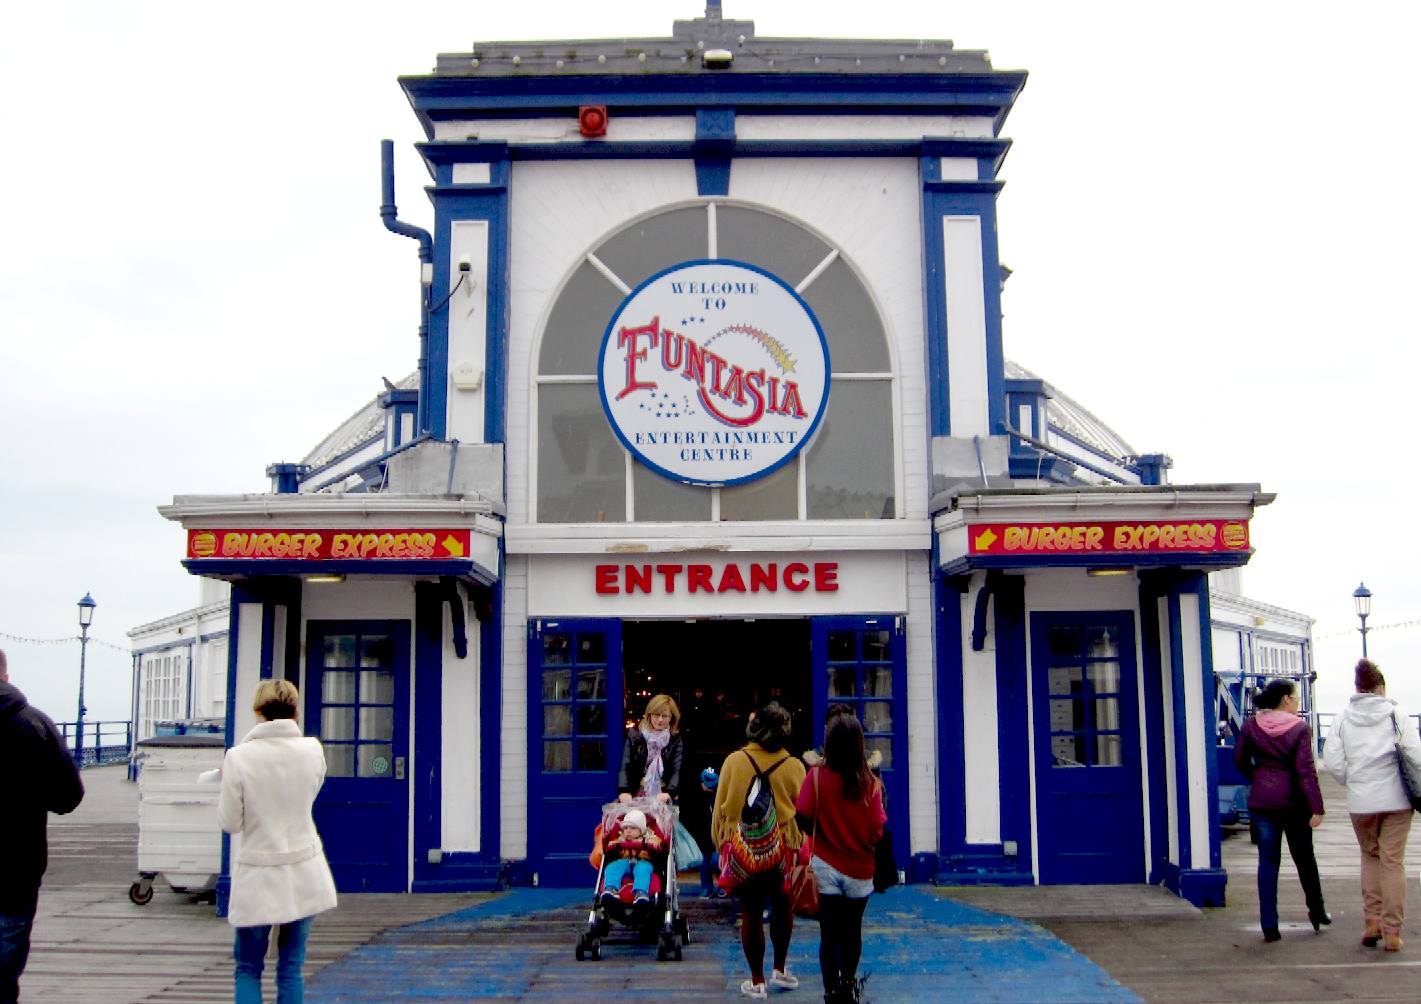 Funtasia amusement centre and burger express